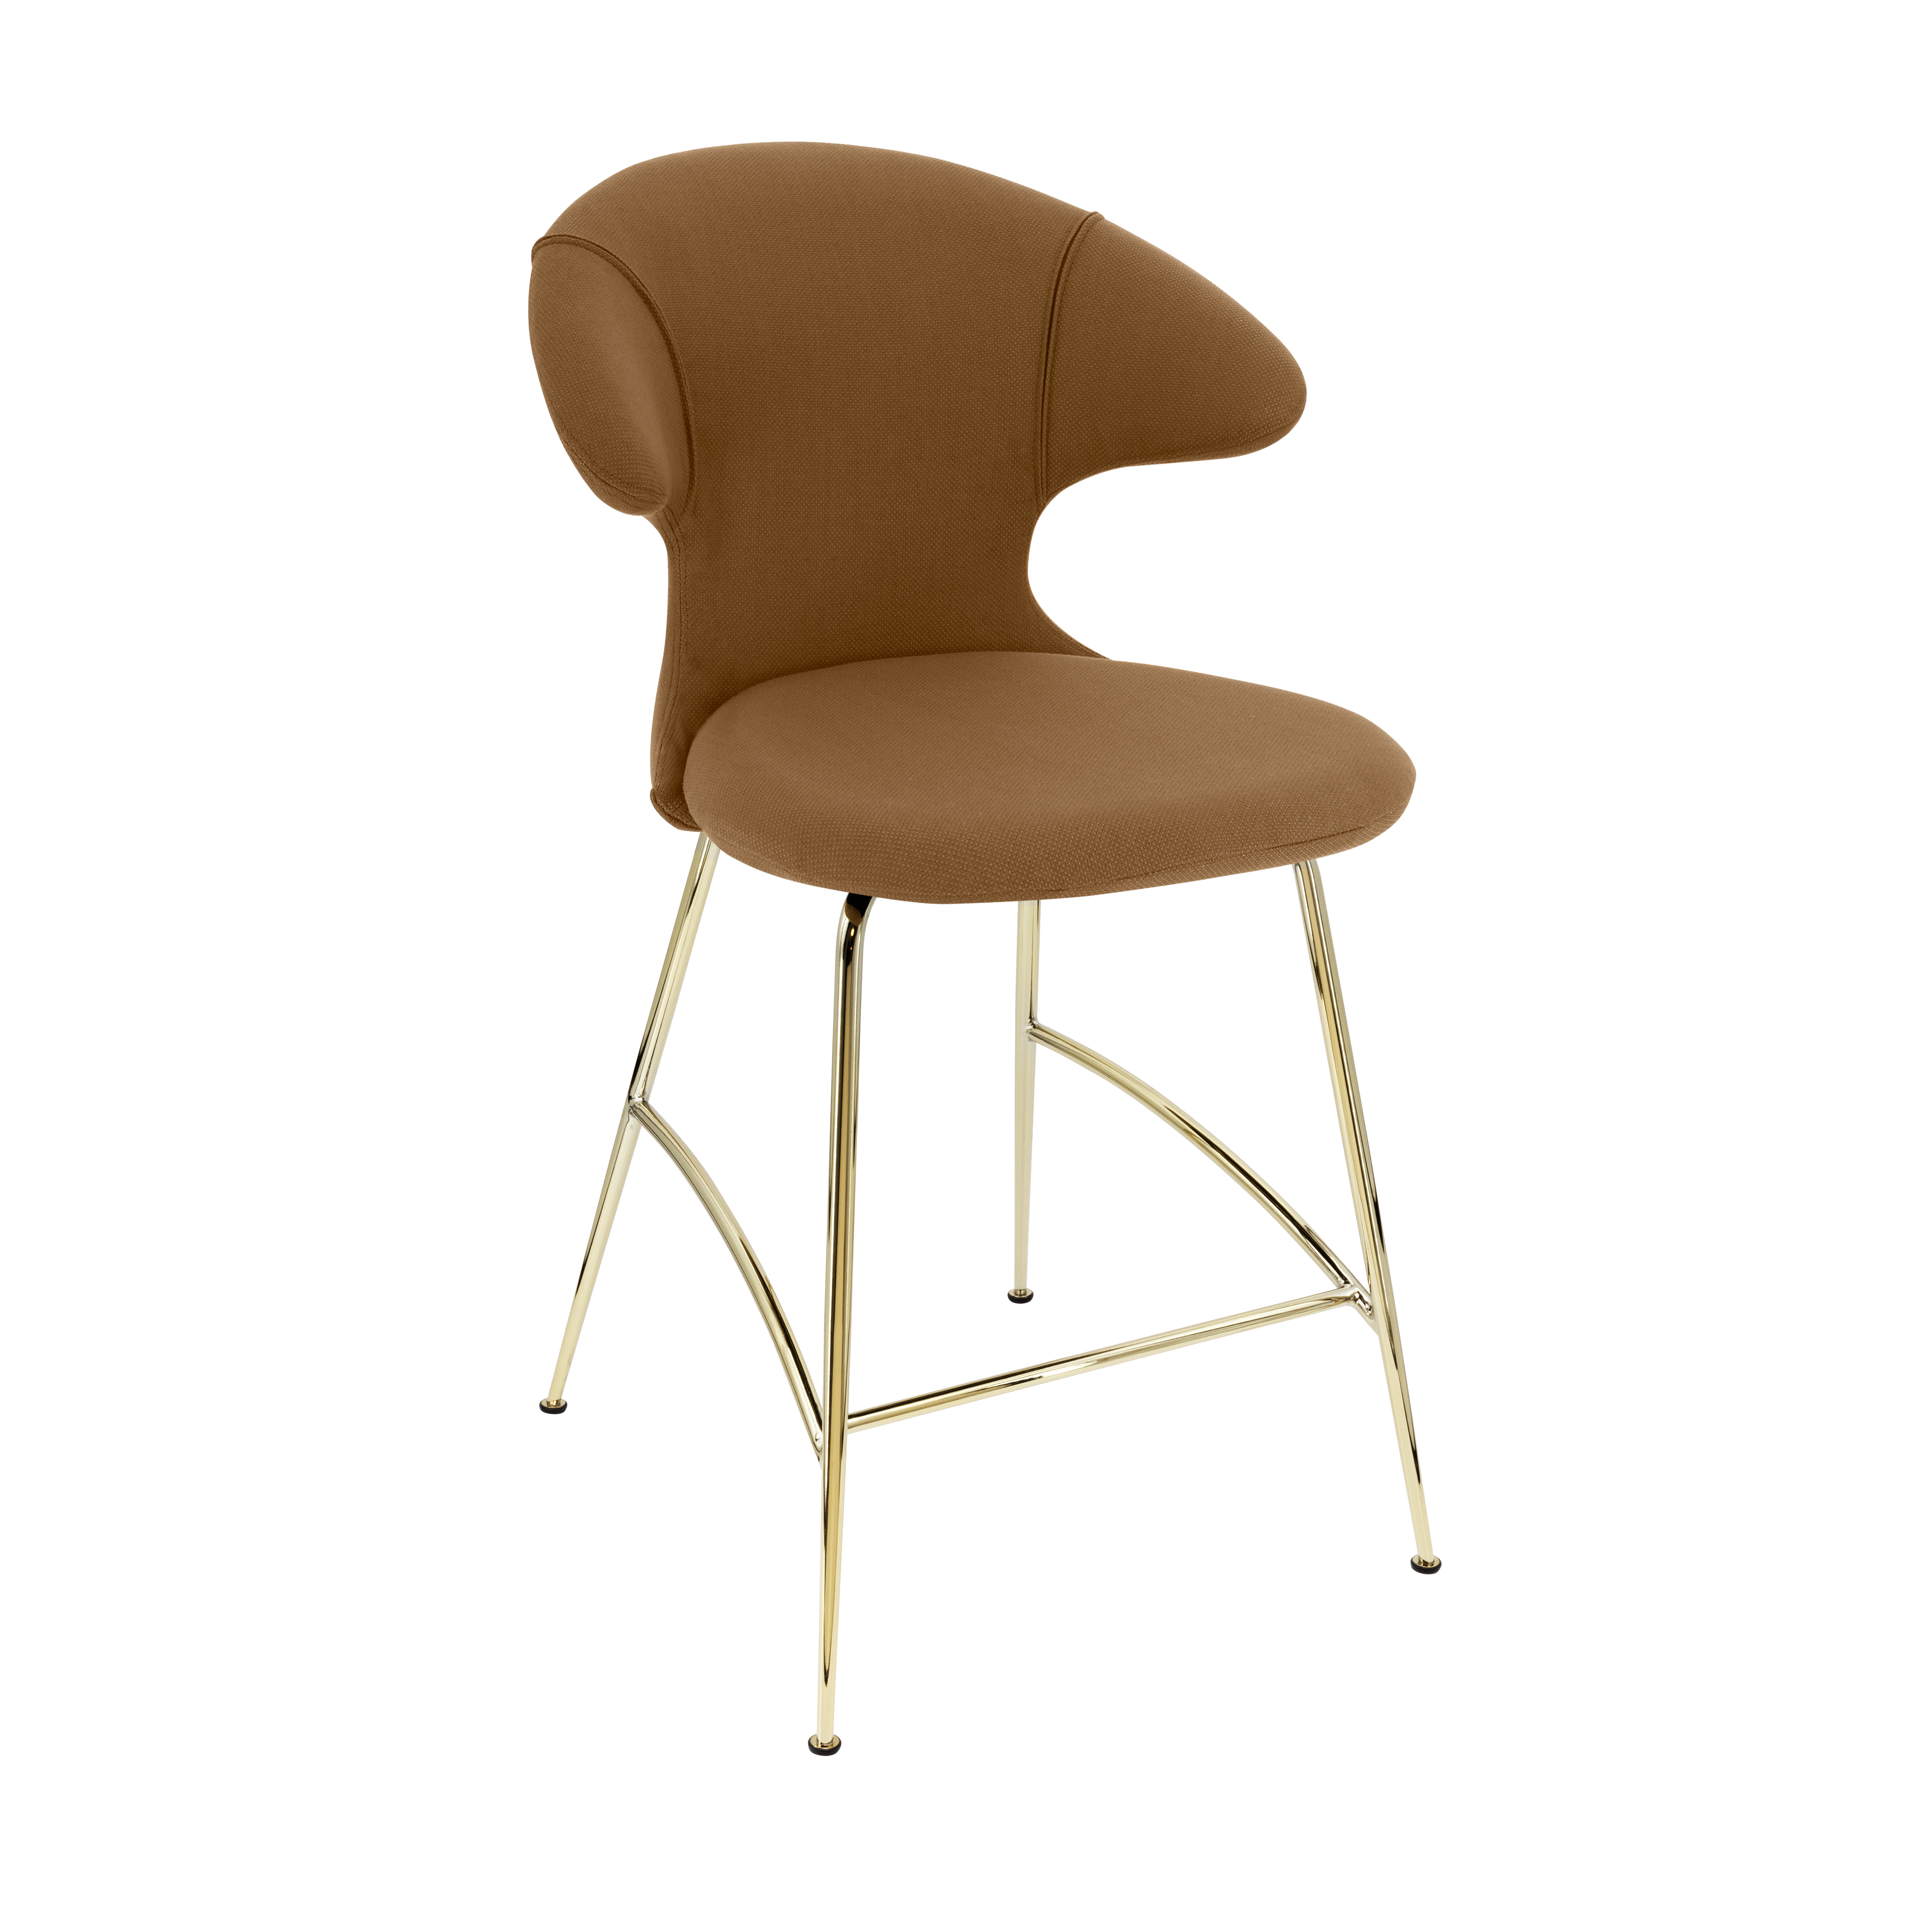 Time Flies Counter Stuhl in Caramel präsentiert im Onlineshop von KAQTU Design AG. Barstuhl mit Armlehne ist von Umage